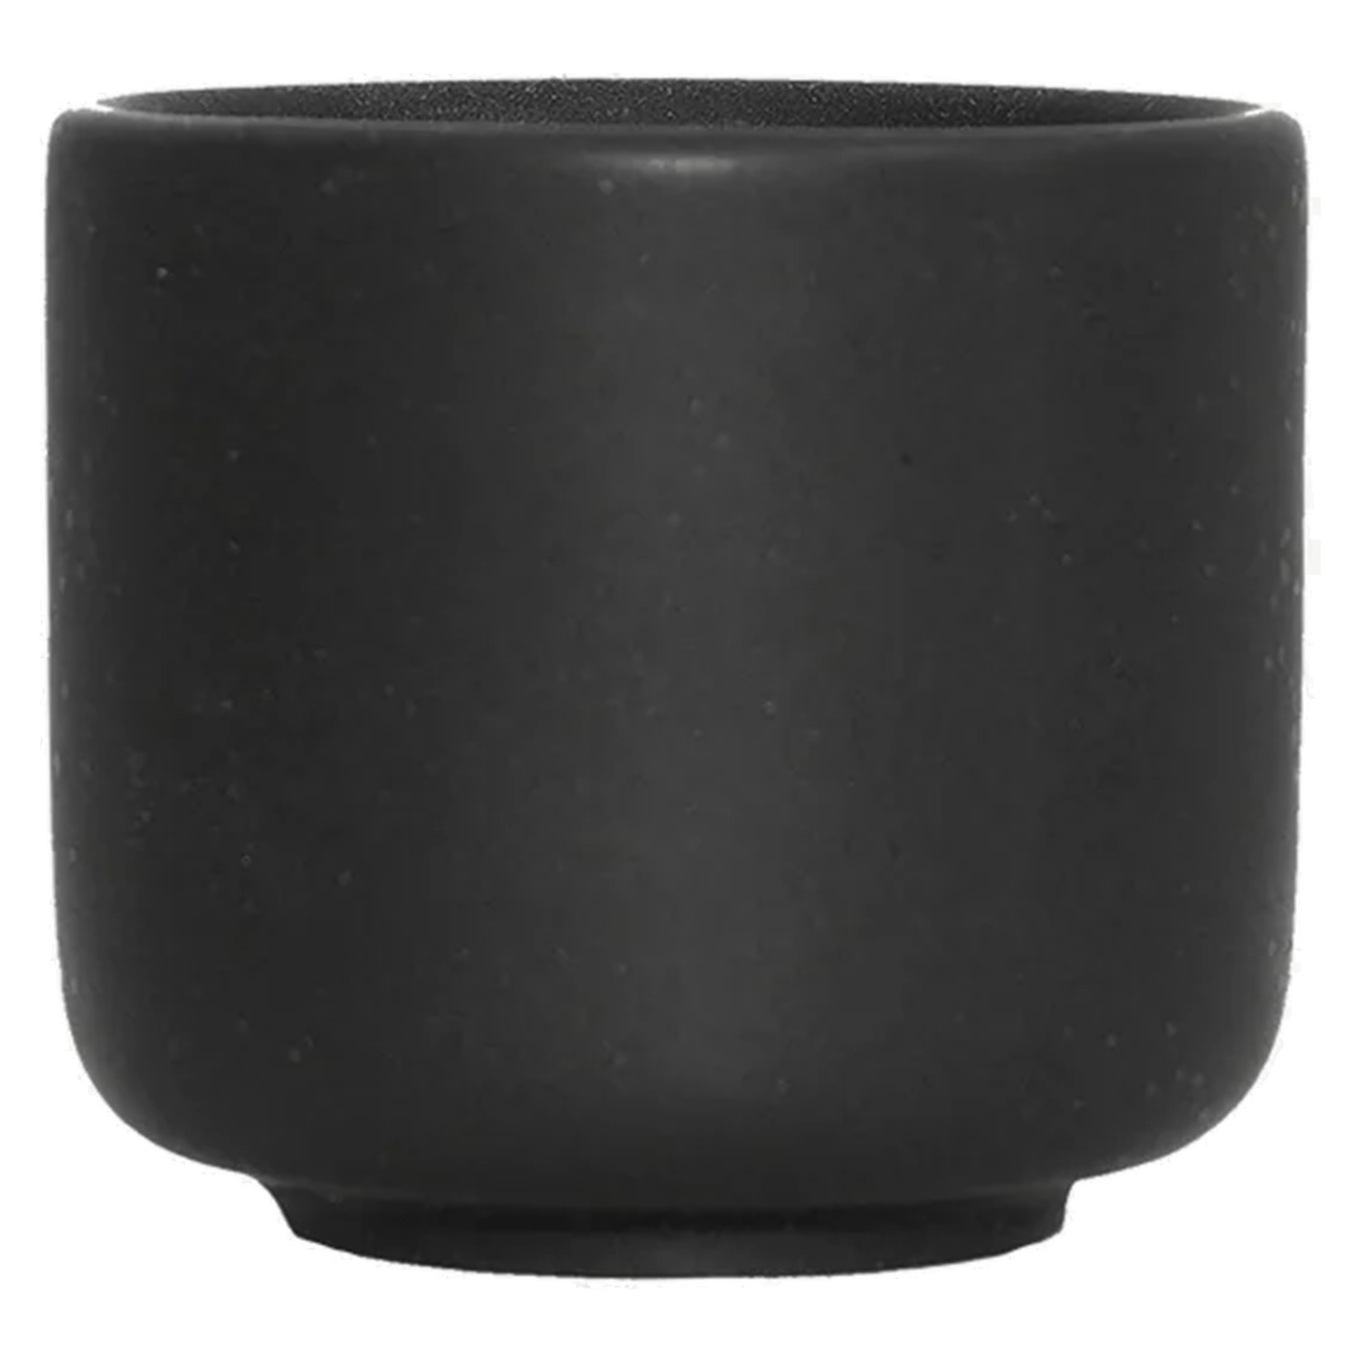 Ceramic Pisu Eierdopje 5 cm, Ink Black